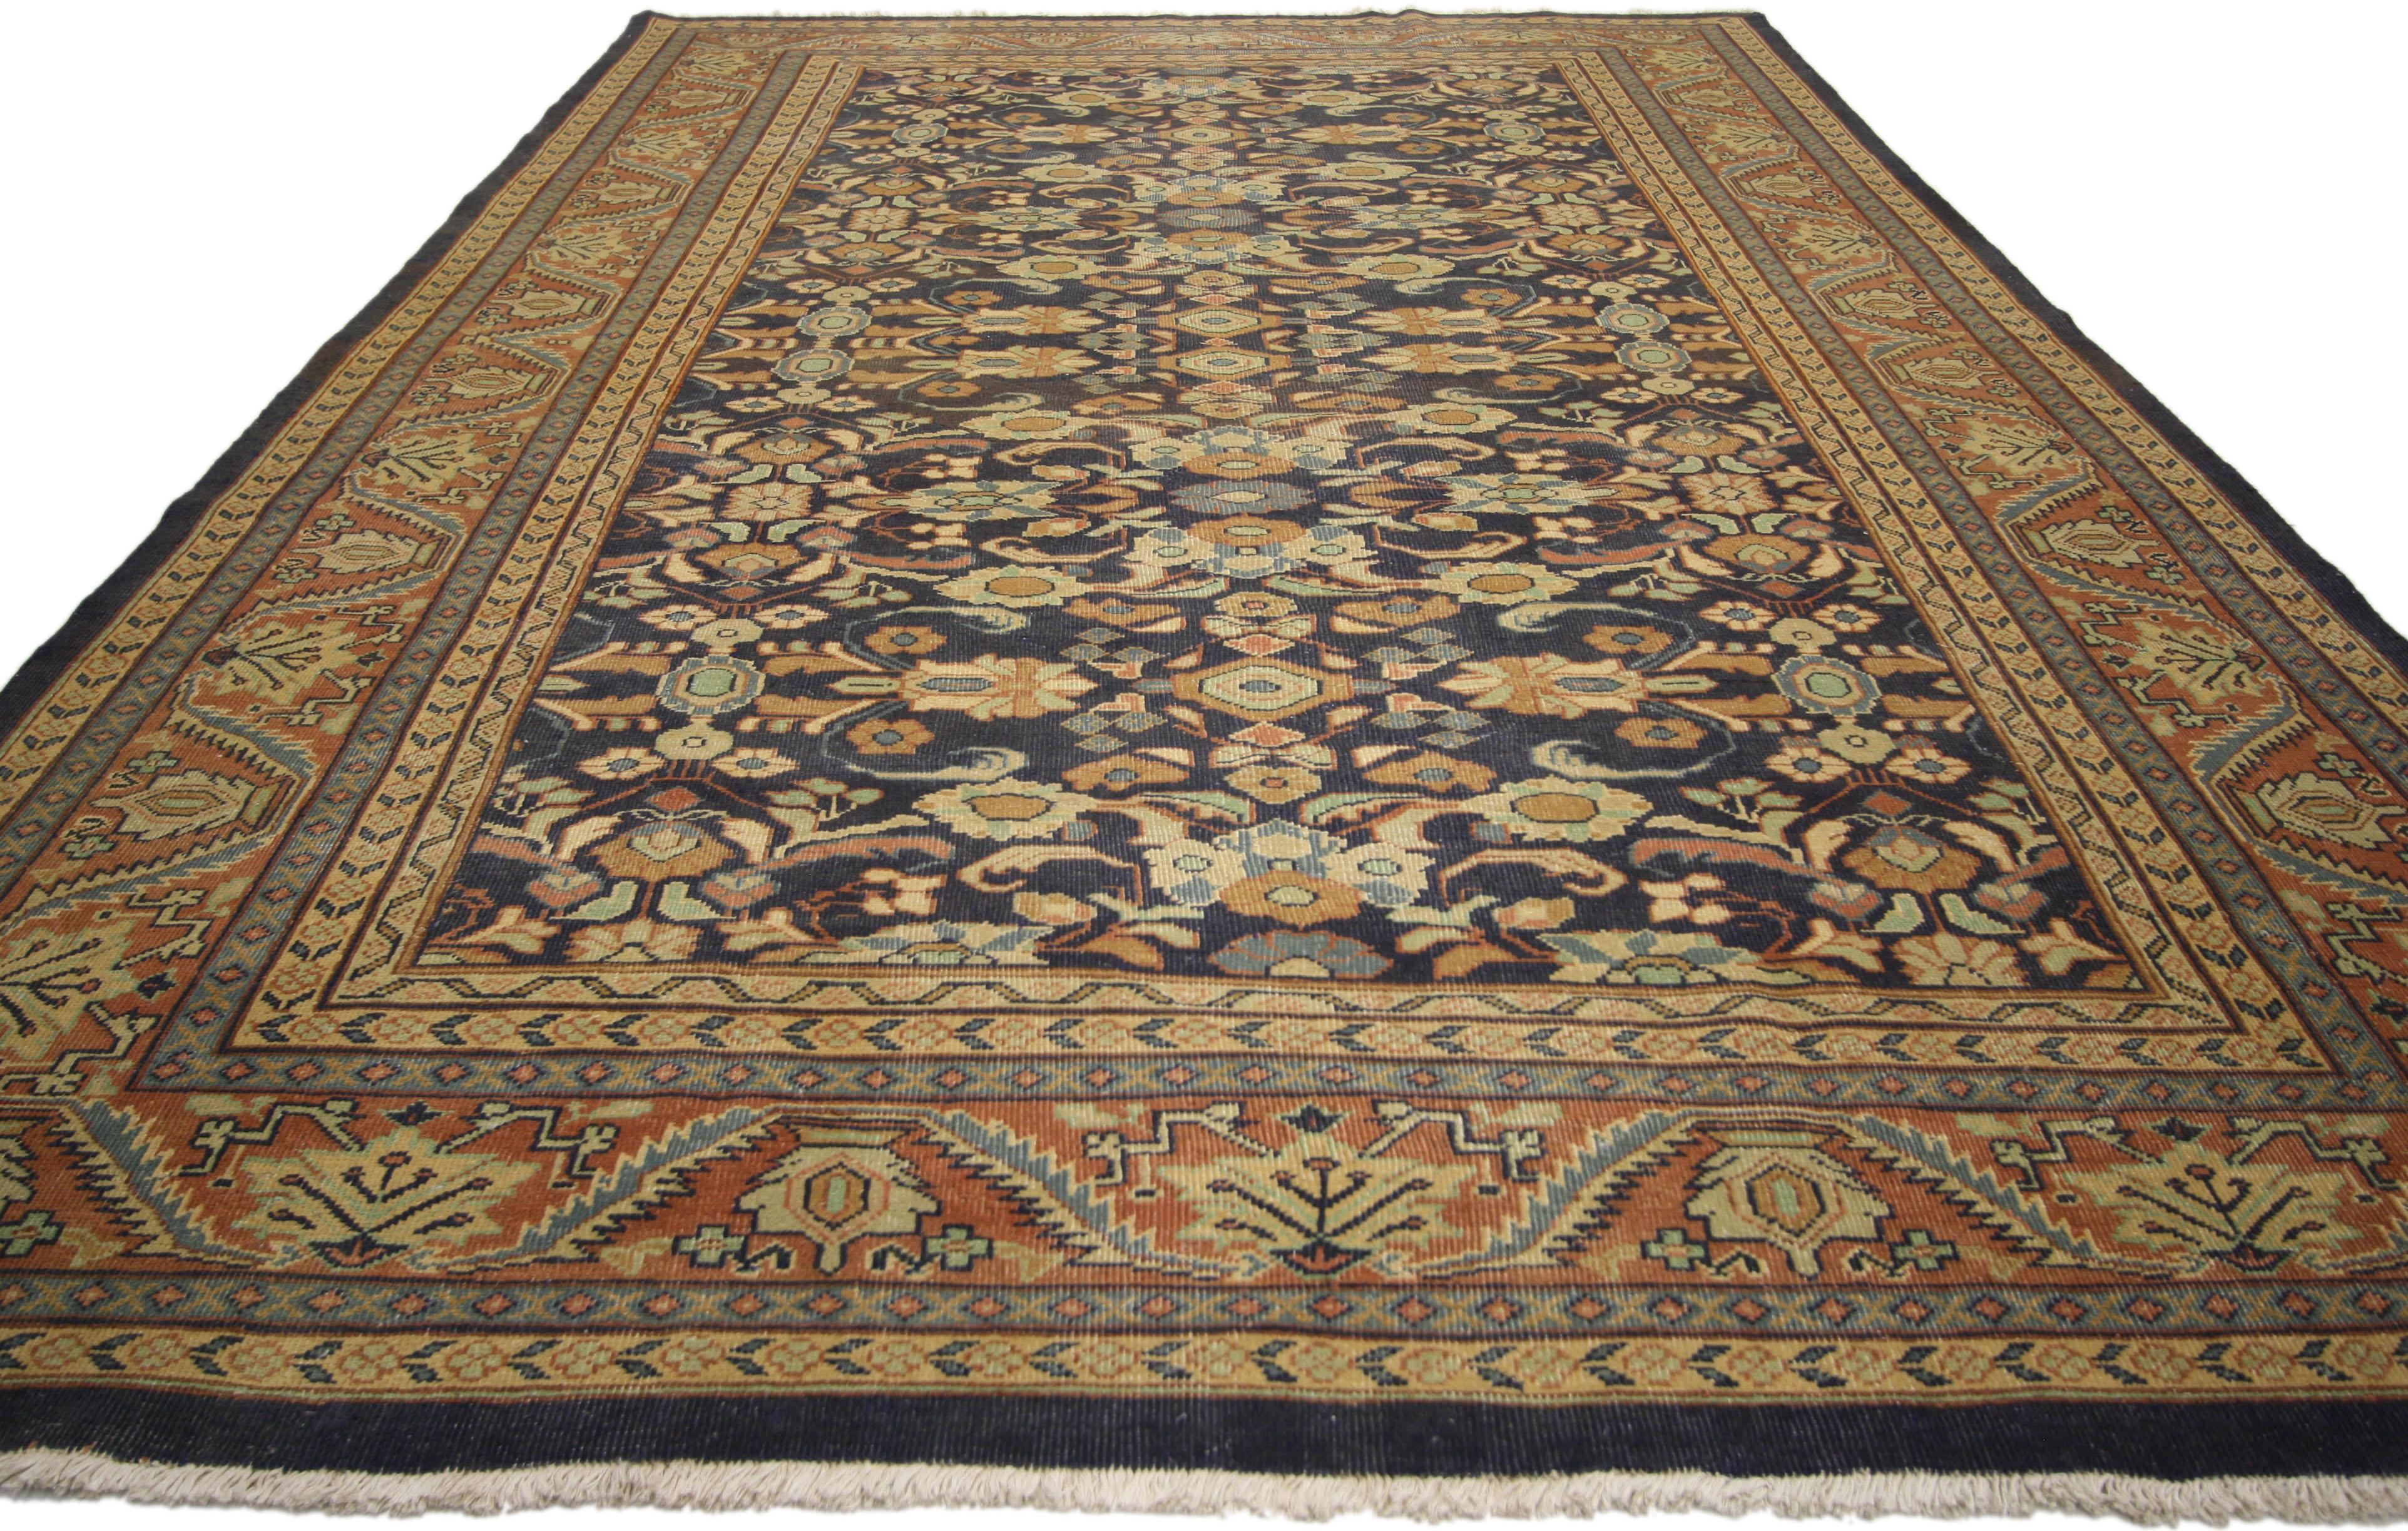 75830 Vintage Persian Mahal Teppich im traditionellen Stil. Klassische architektonische Details verleihen diesem handgeknüpften persischen Mahal-Teppich aus Wolle im traditionellen Stil zeitlose Eleganz und einen Hauch von Geschichte. Das lebendige,